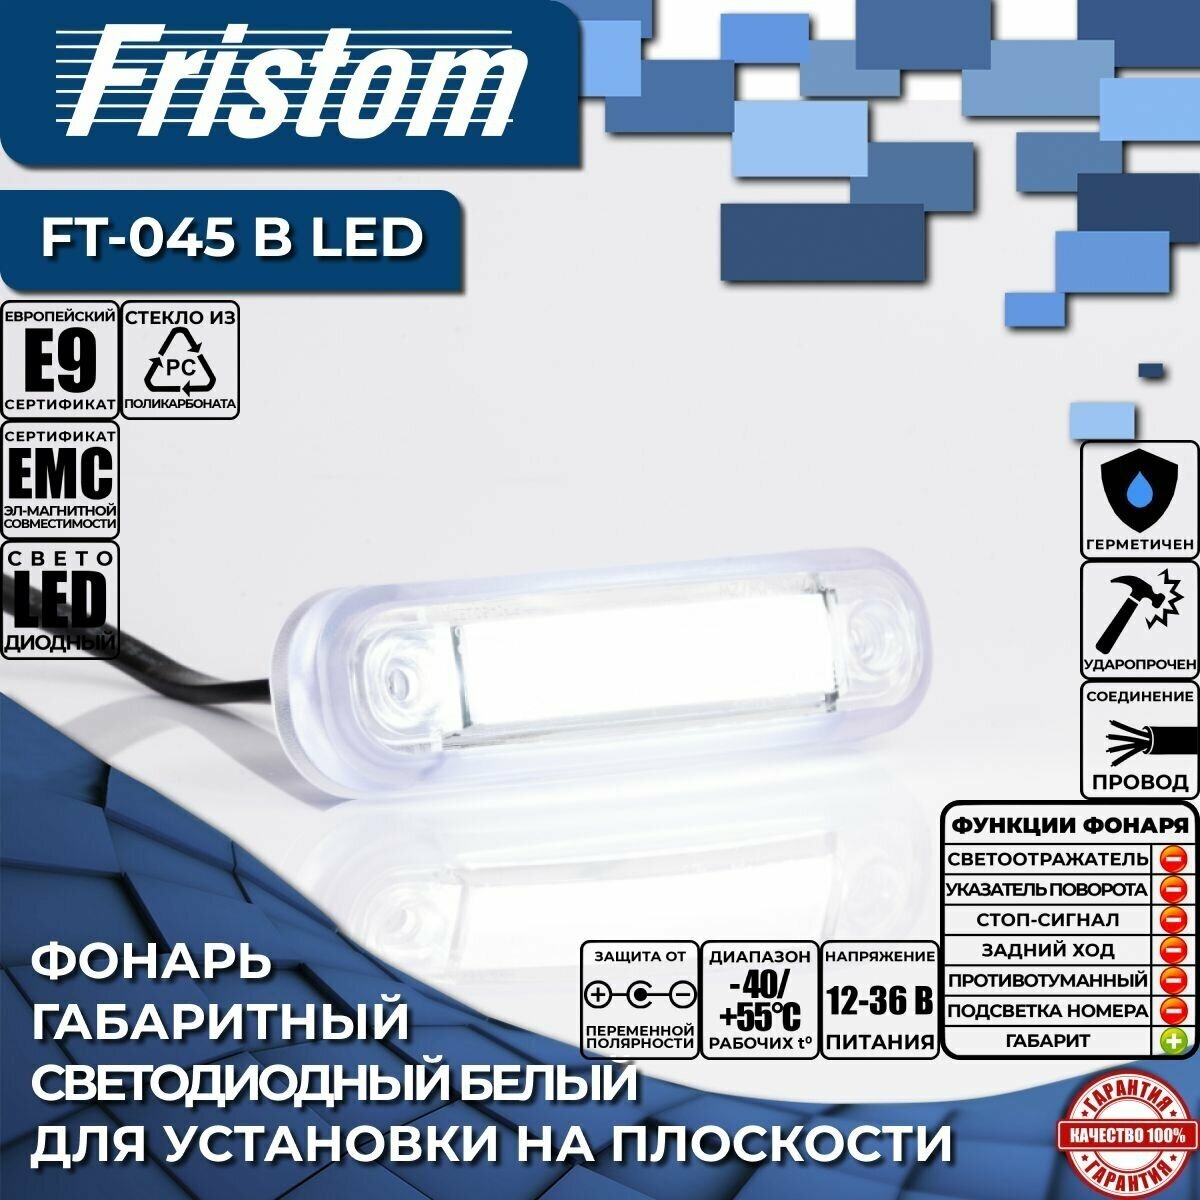 Фонарь габаритный светодиодный белый Fristom FT-045 B LED с проводом 0.5м. (1 шт.)